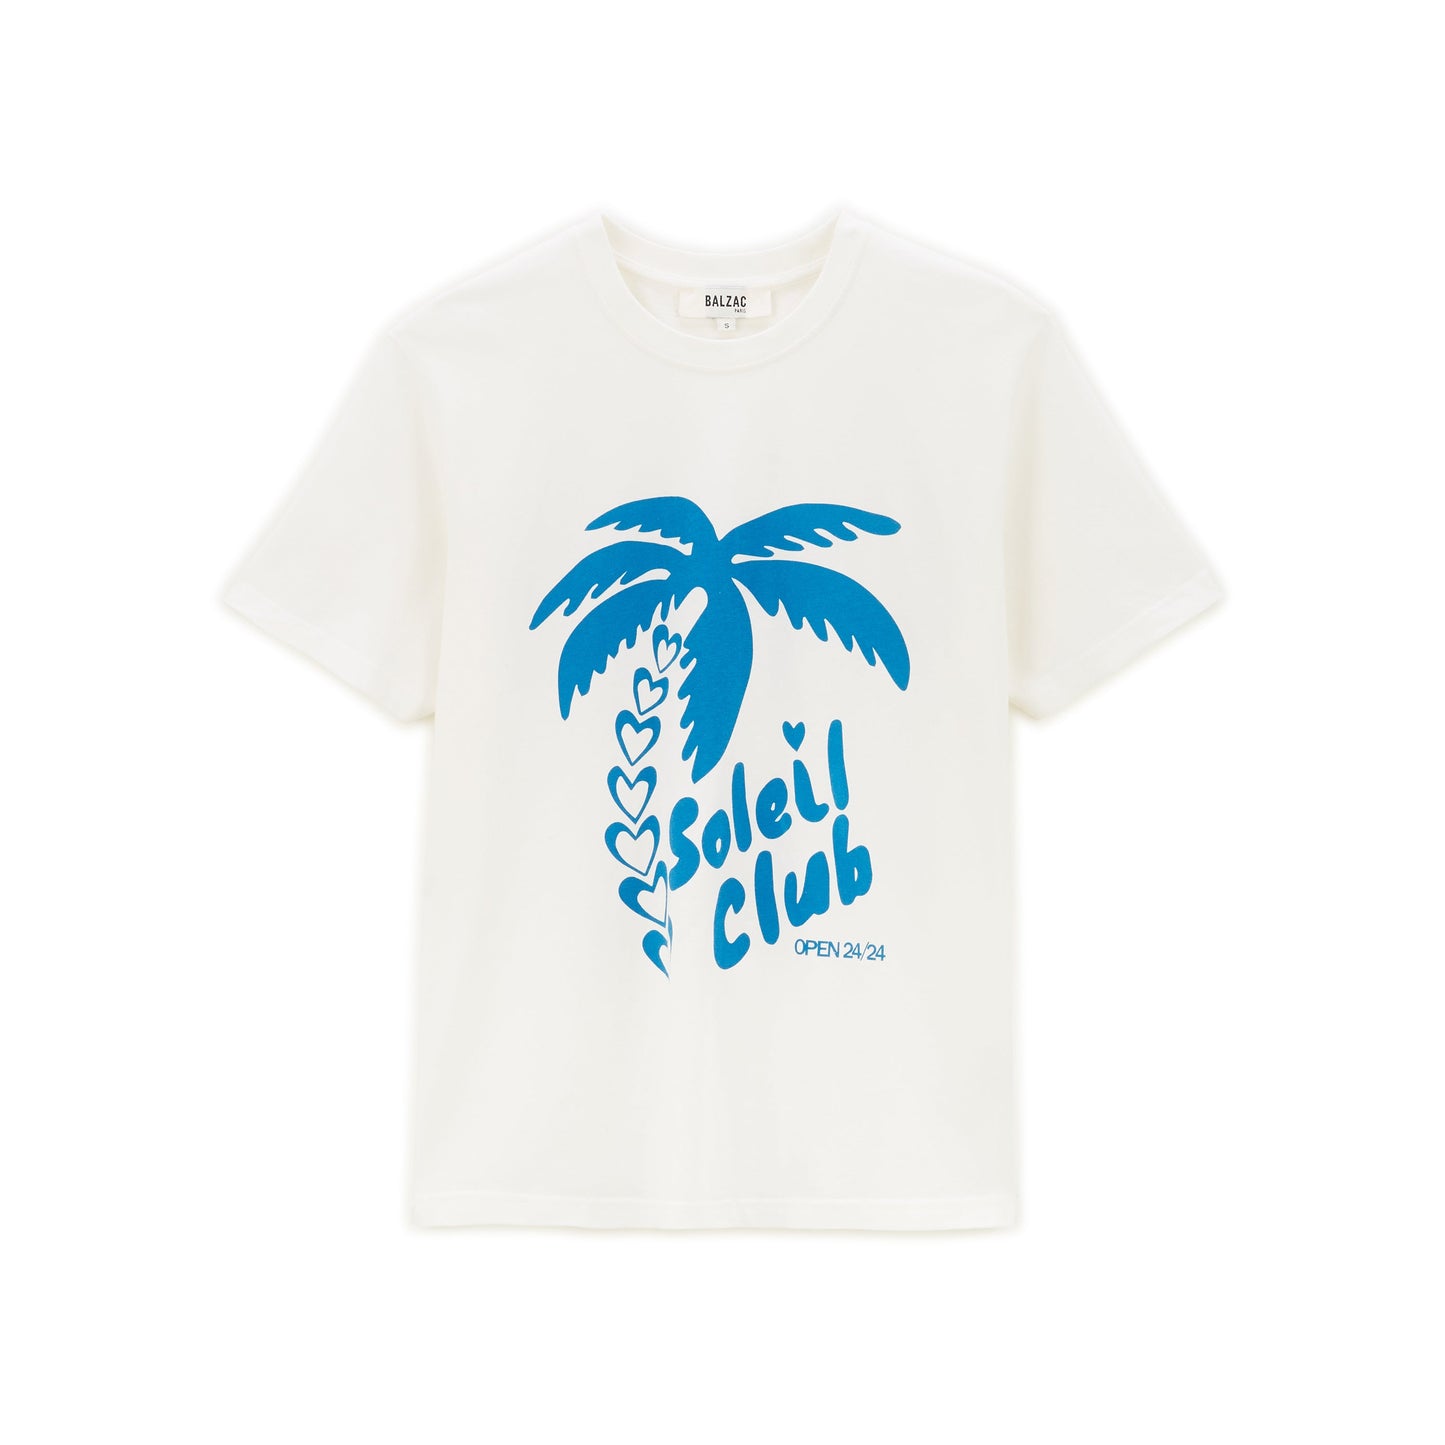 Tee-shirt Bree Soleil Club bleu et blanc